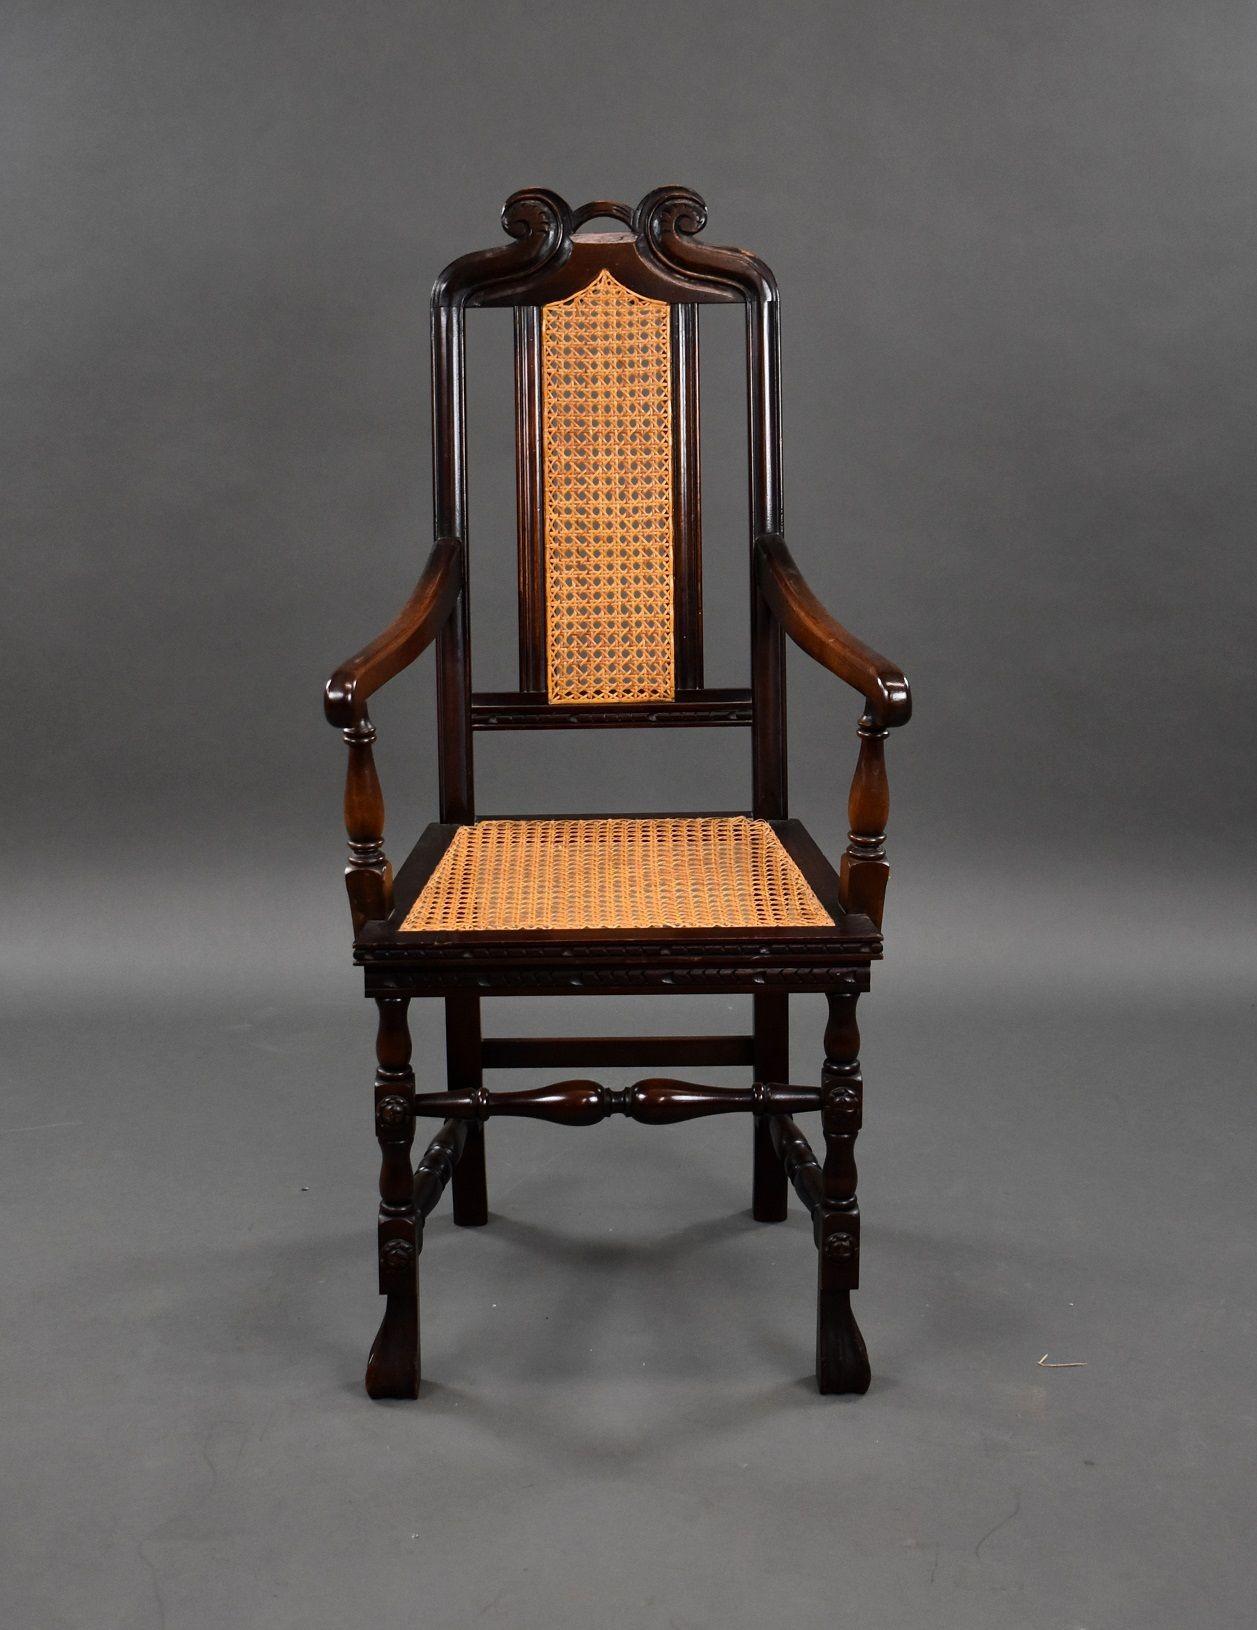 Eichenholzsessel aus den 1930er Jahren mit Sitz und Rückenlehne aus Rohrgeflecht und dekorativer Platte, die von einer Bahre getragen wird.